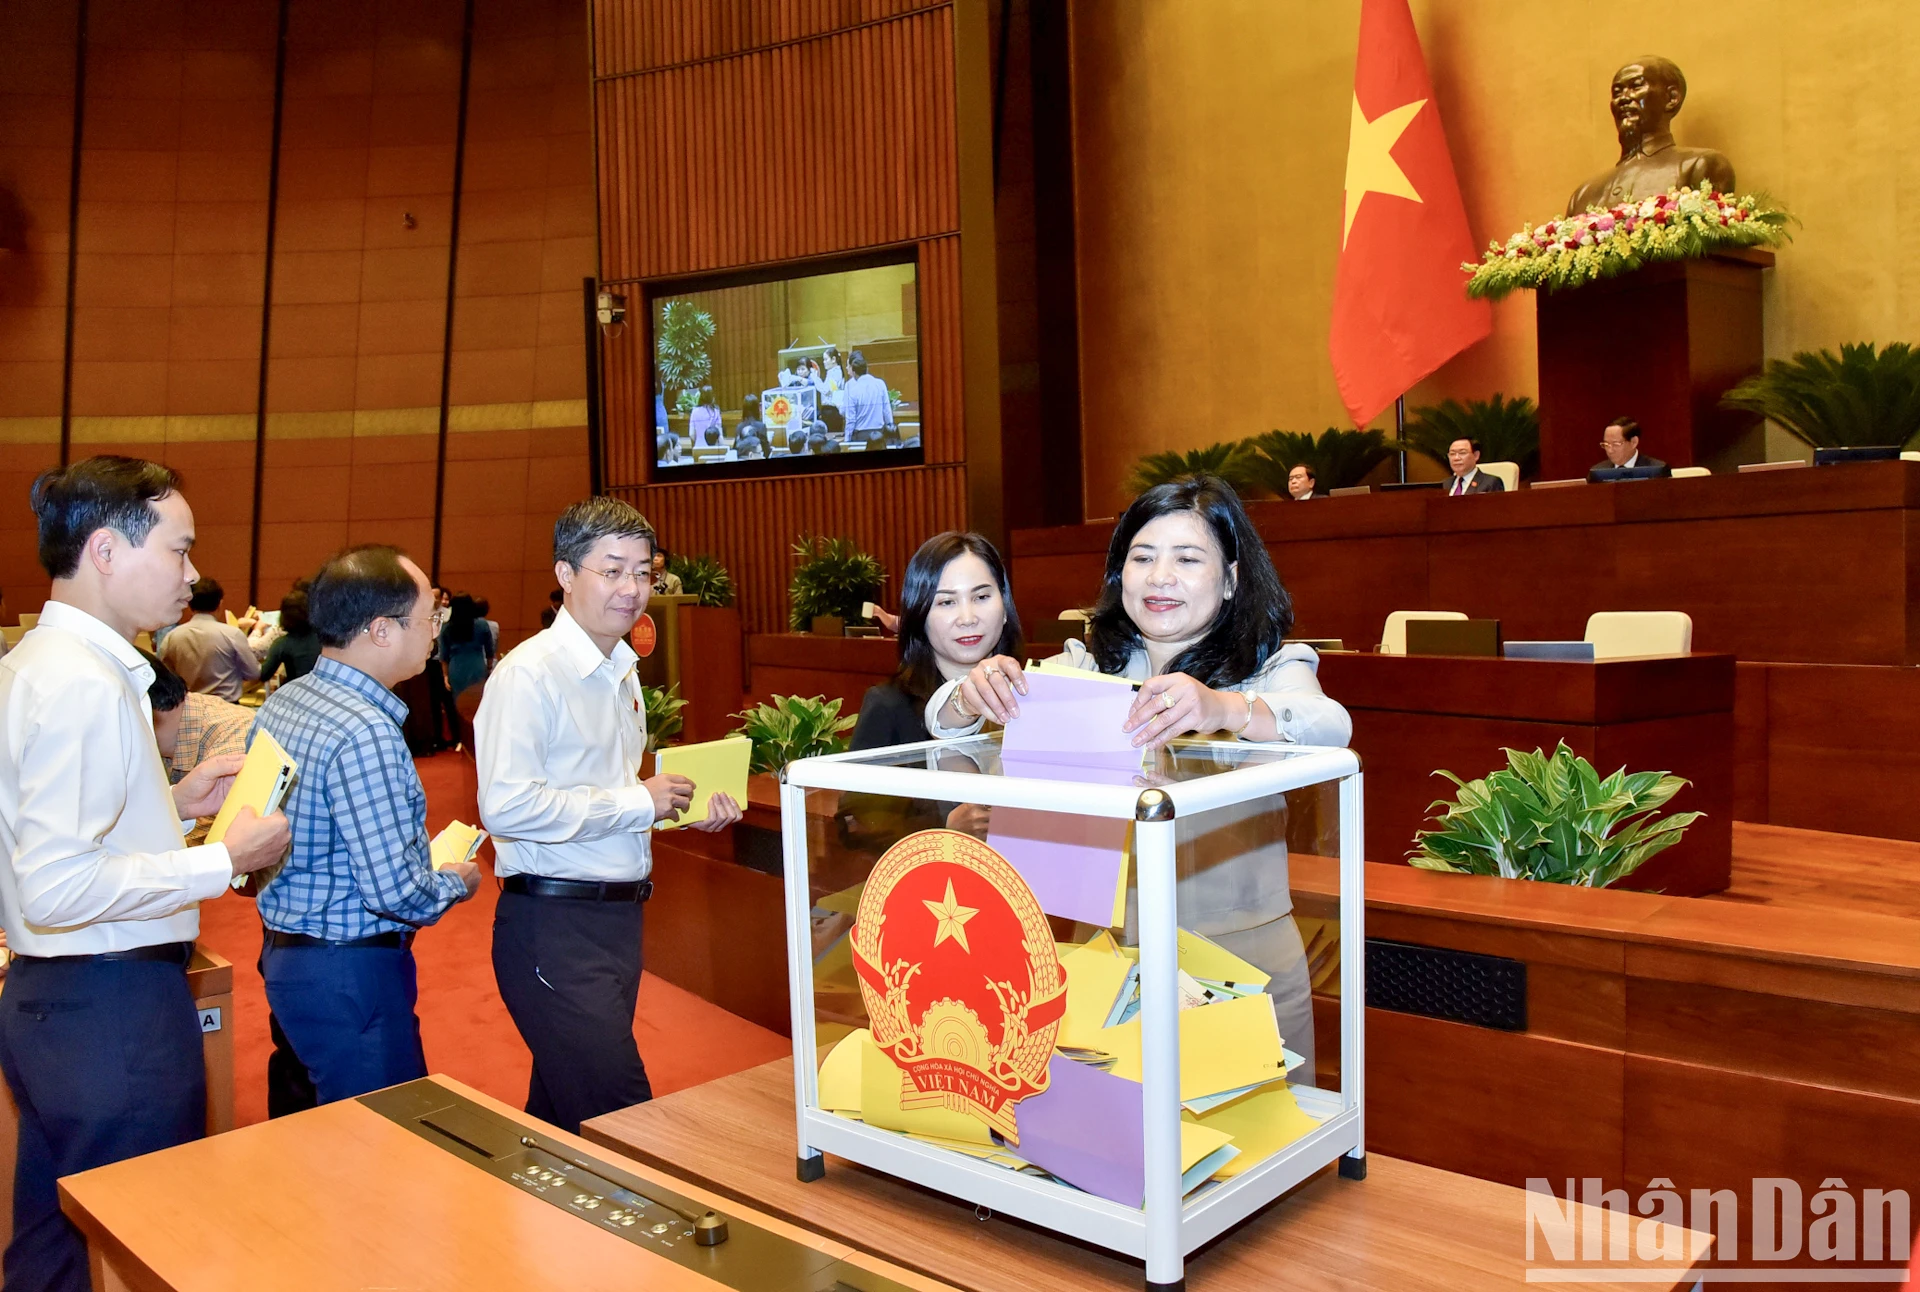 Quốc hội bỏ phiếu kín đánh giá tín nhiệm 44 chức danh ảnh 2